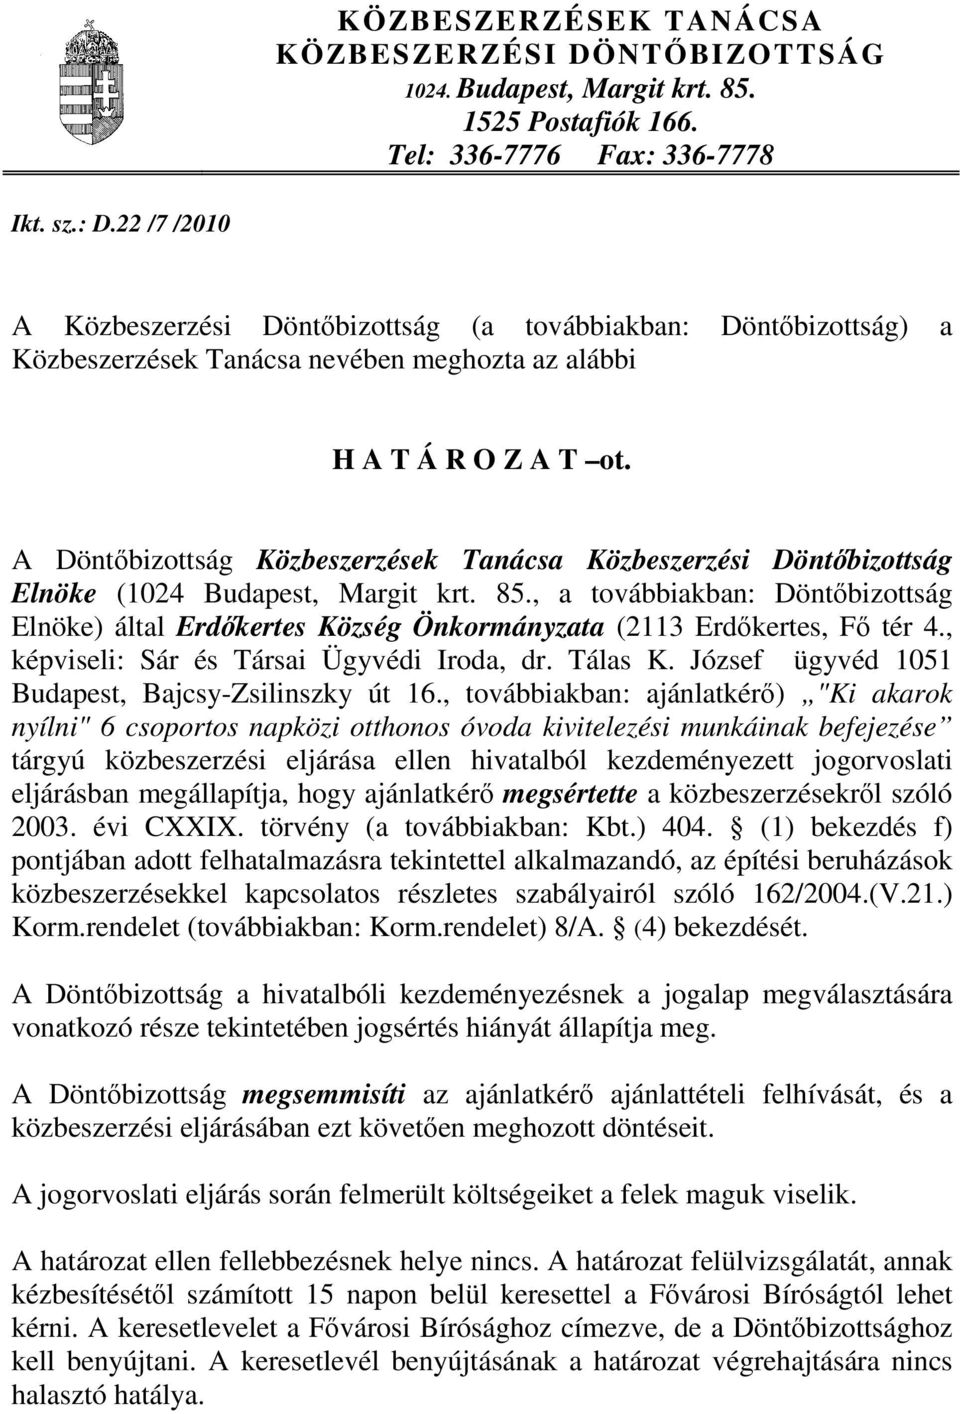 A Döntőbizottság Közbeszerzések Tanácsa Közbeszerzési Döntőbizottság Elnöke (1024 Budapest, Margit krt. 85.